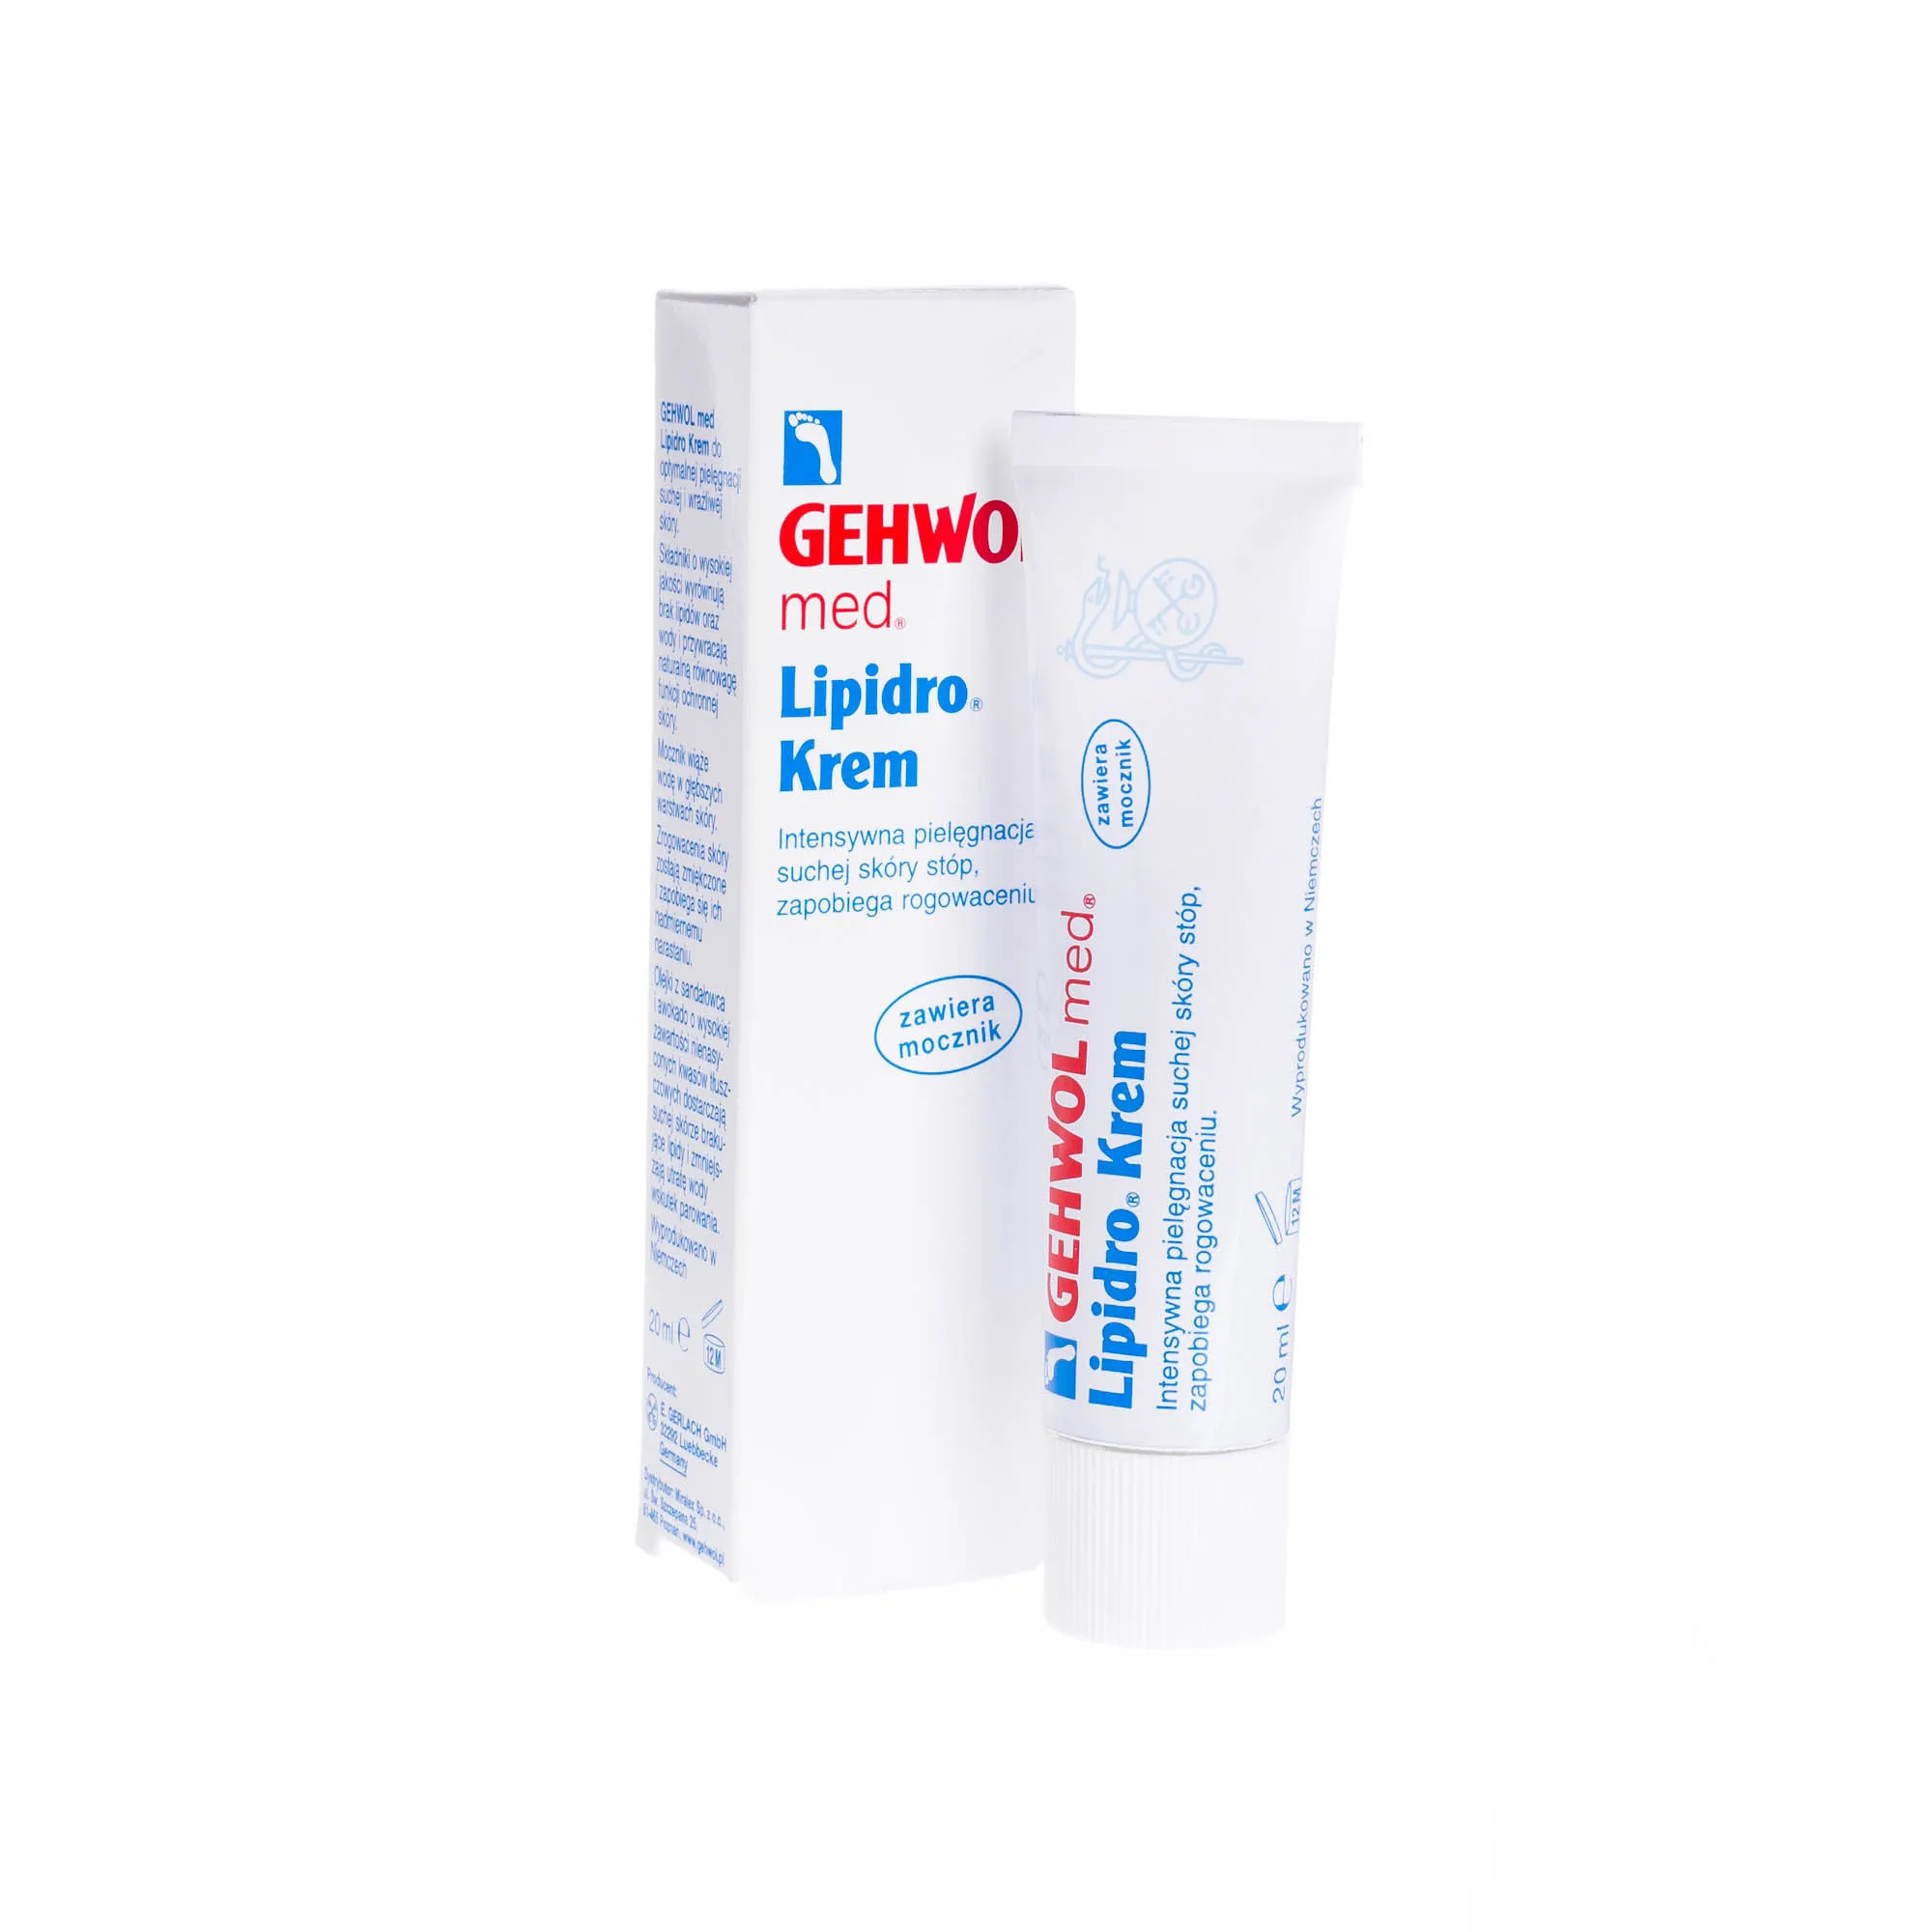 GEHWOL Lipidro- intensywna pielęgnacja suchej skóry stóp, 20 ml